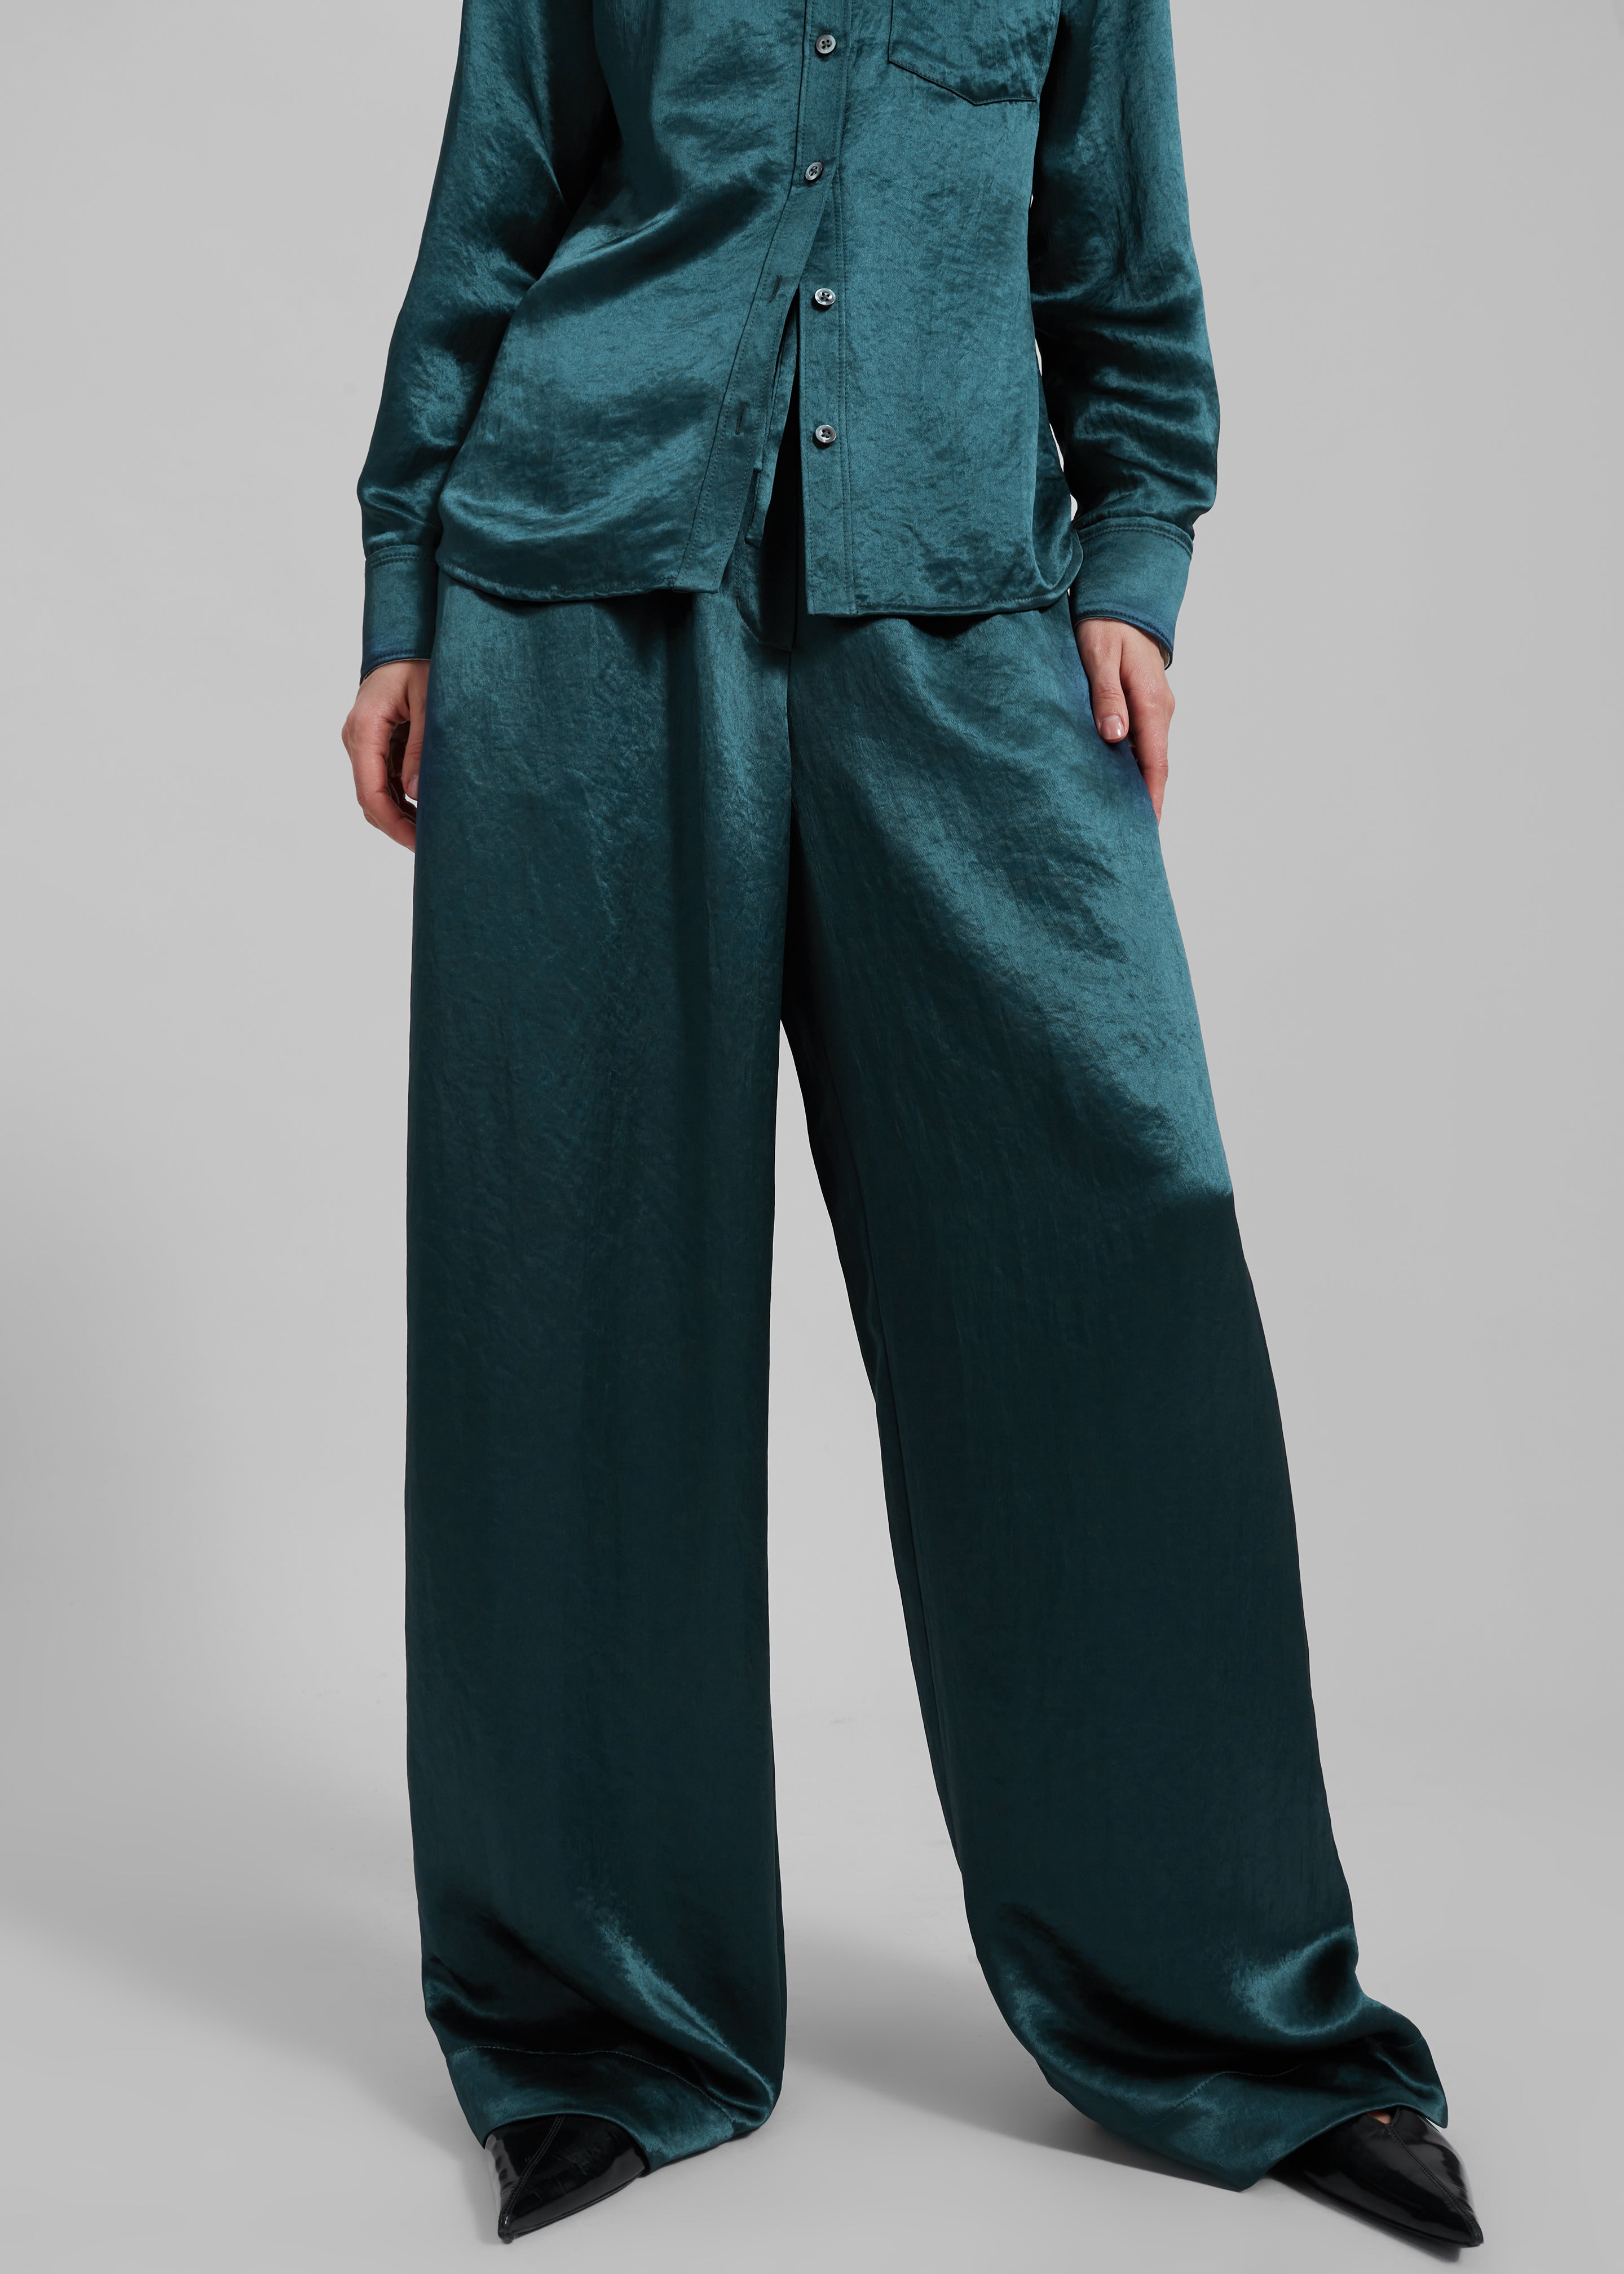 3.1 Phillip Lim Pajama Trousers - Deep Ocean - 2